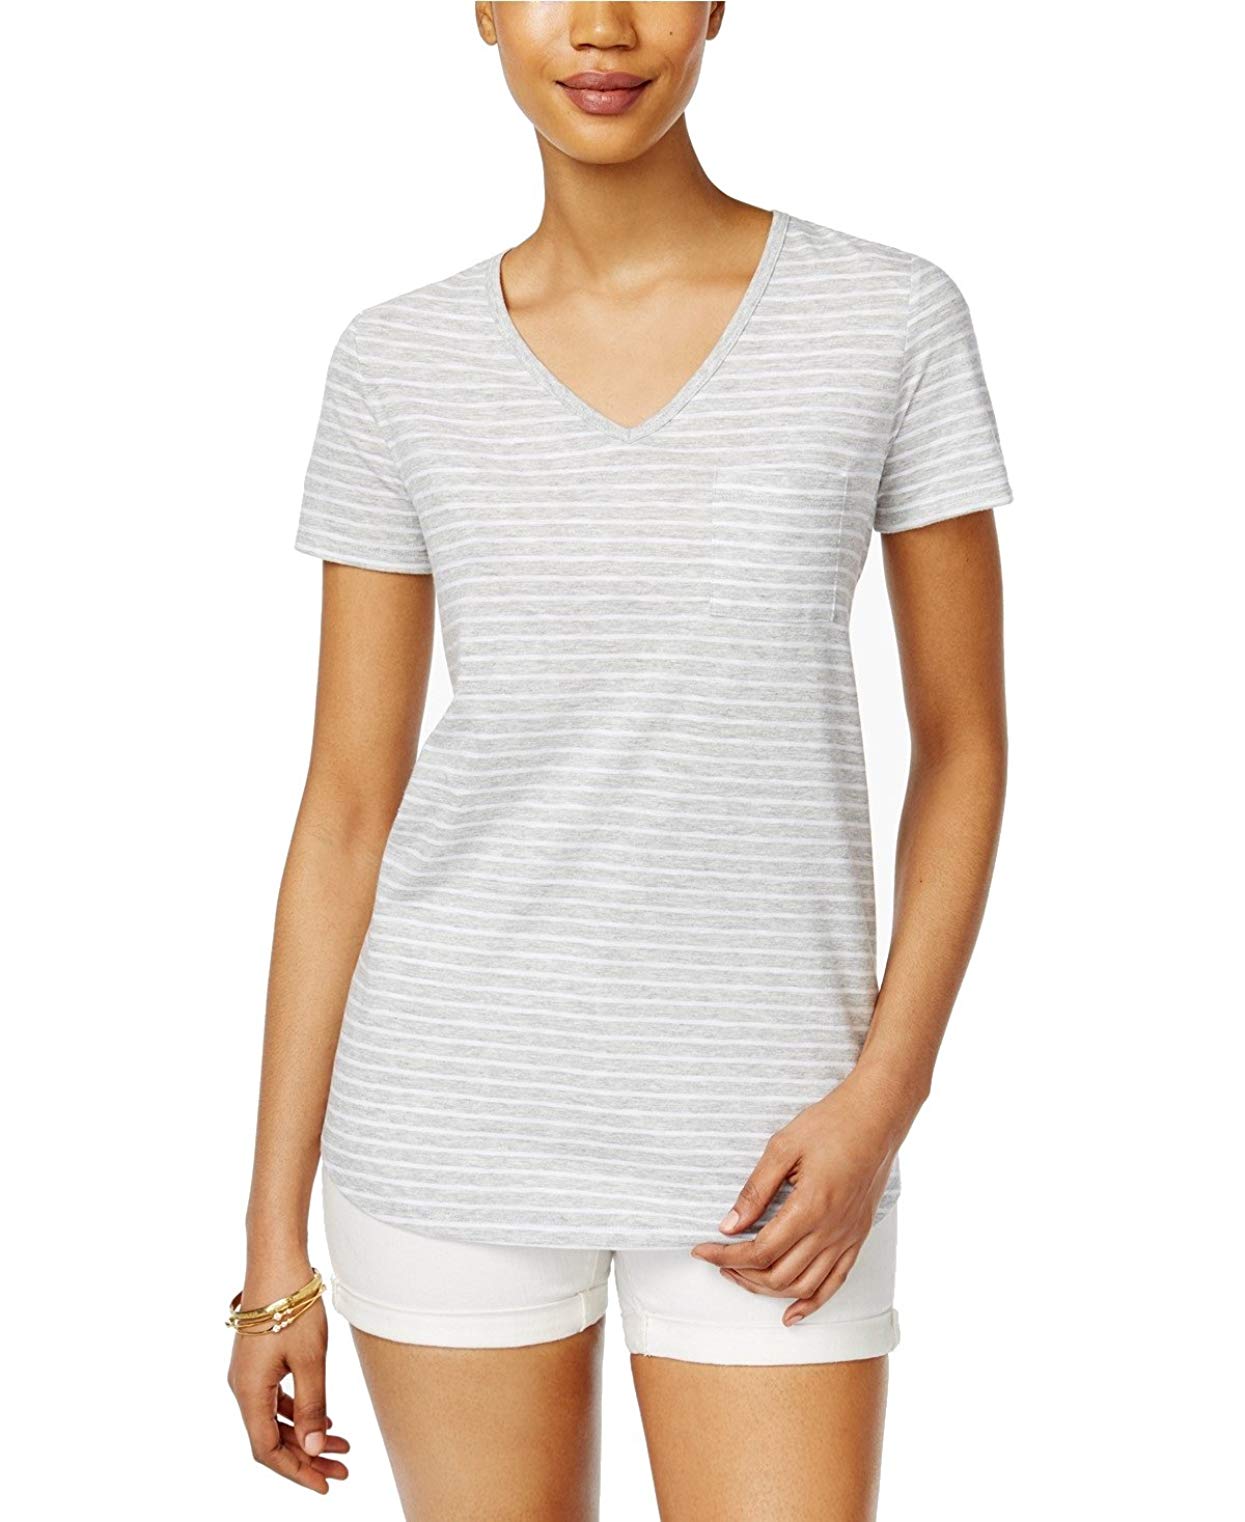 Style Co Striped T-Shirt Light GreyWhite XXS